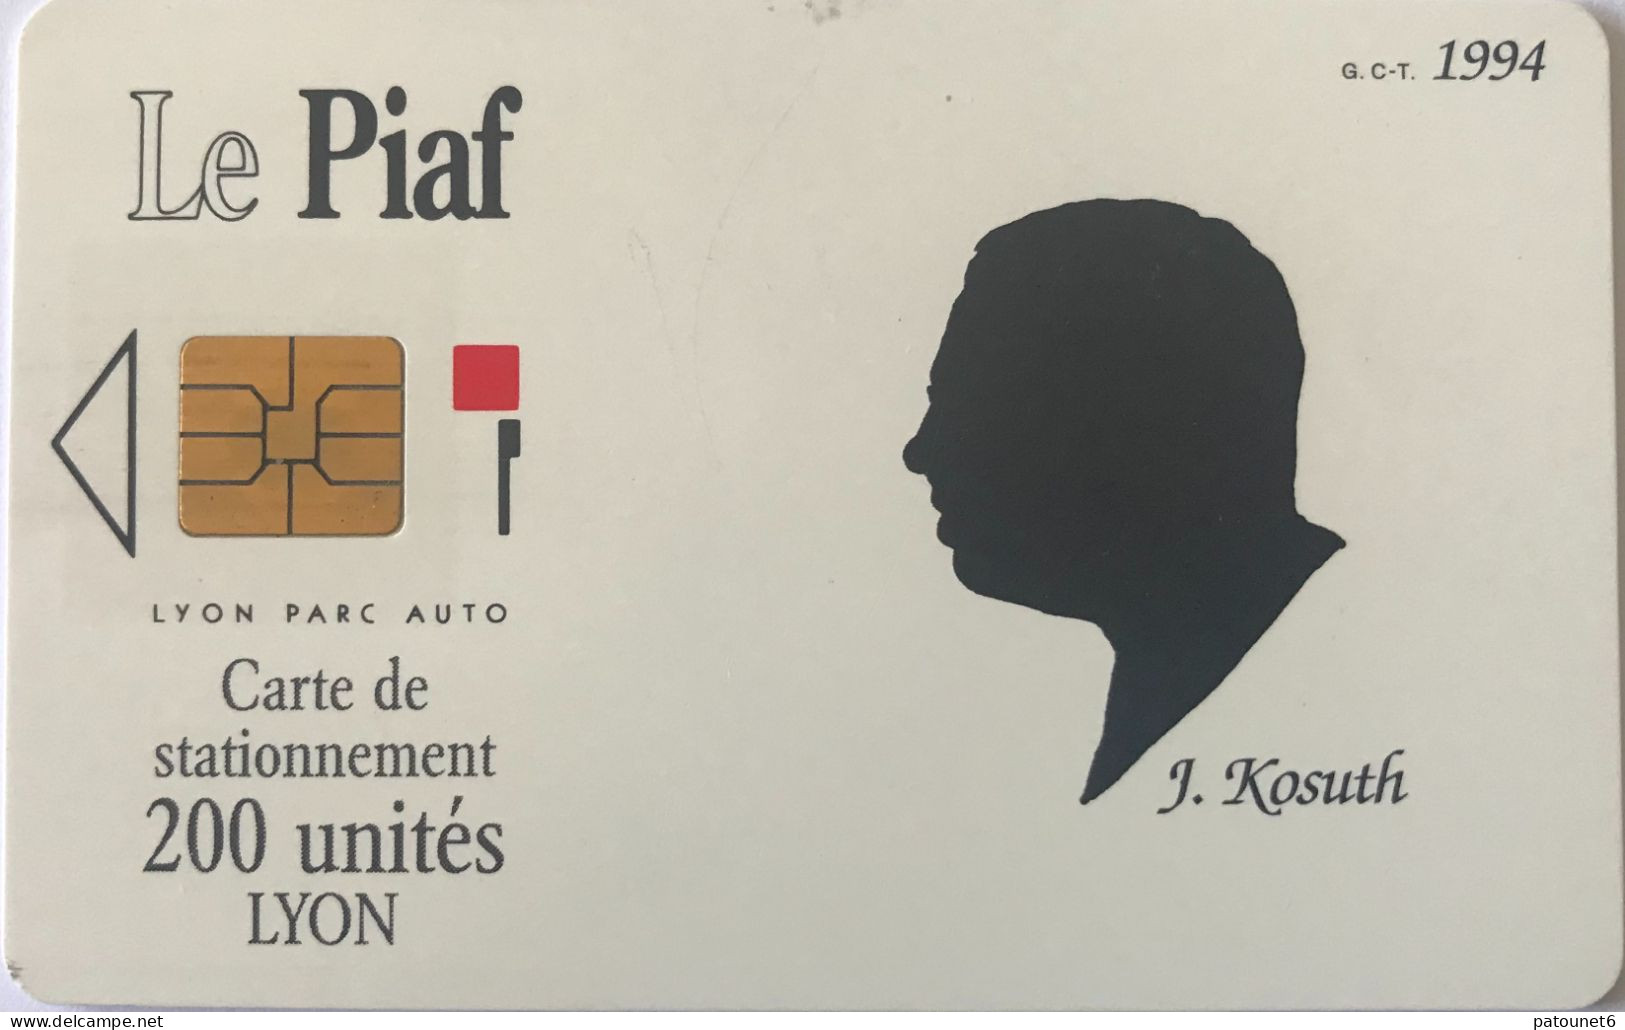 PIAF  -   LYON    - Lyon Parc Auto  - KOSUTH  - 1994  -  200 Unités - Cartes De Stationnement, PIAF